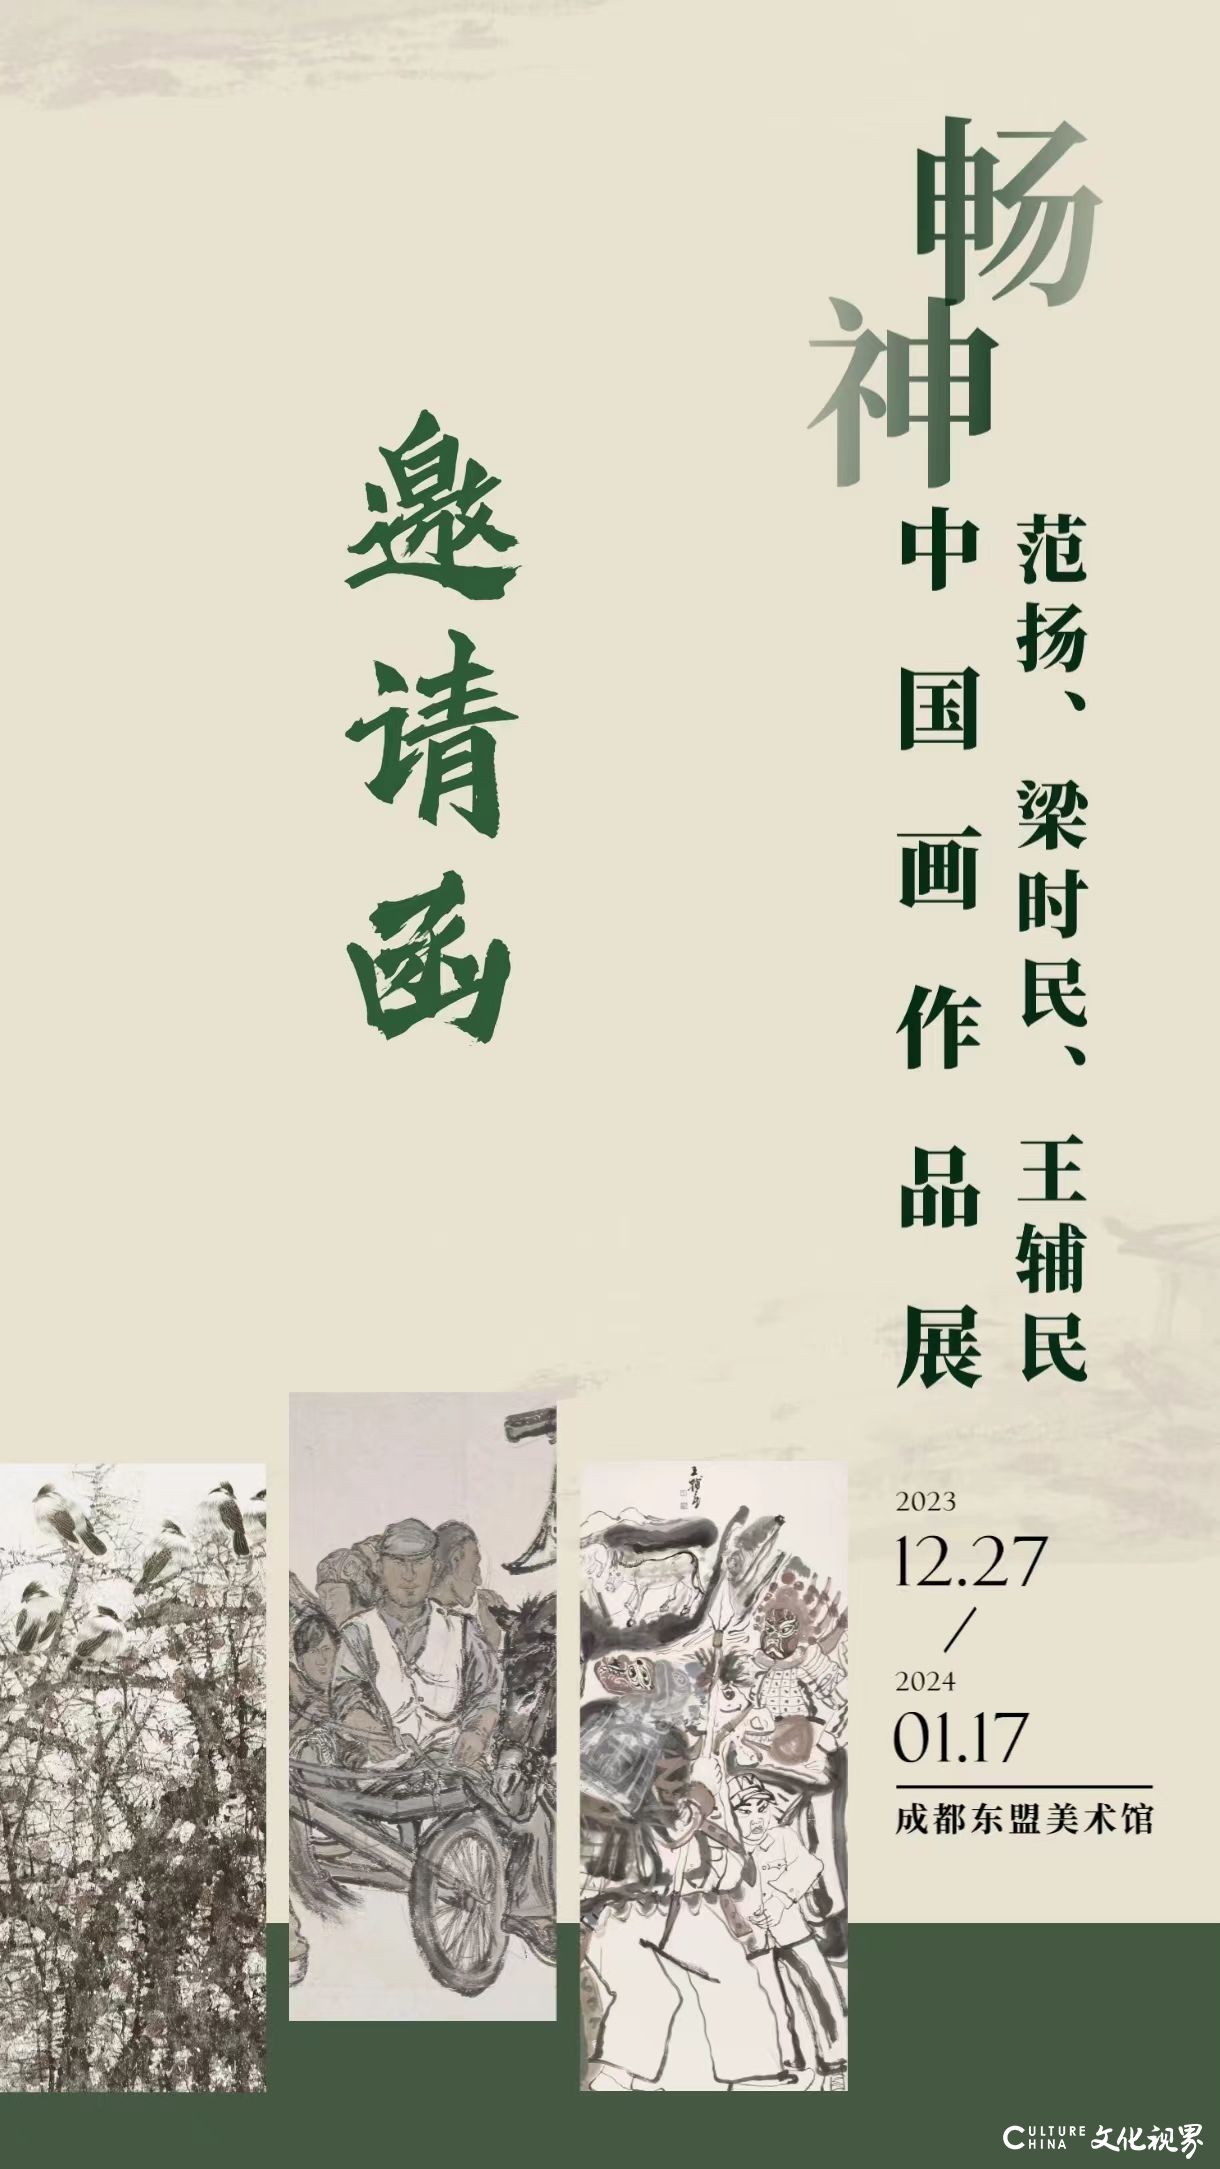 “‘畅神’范扬、梁时民、王辅民中国画作品展”将于12月27日在成都开展